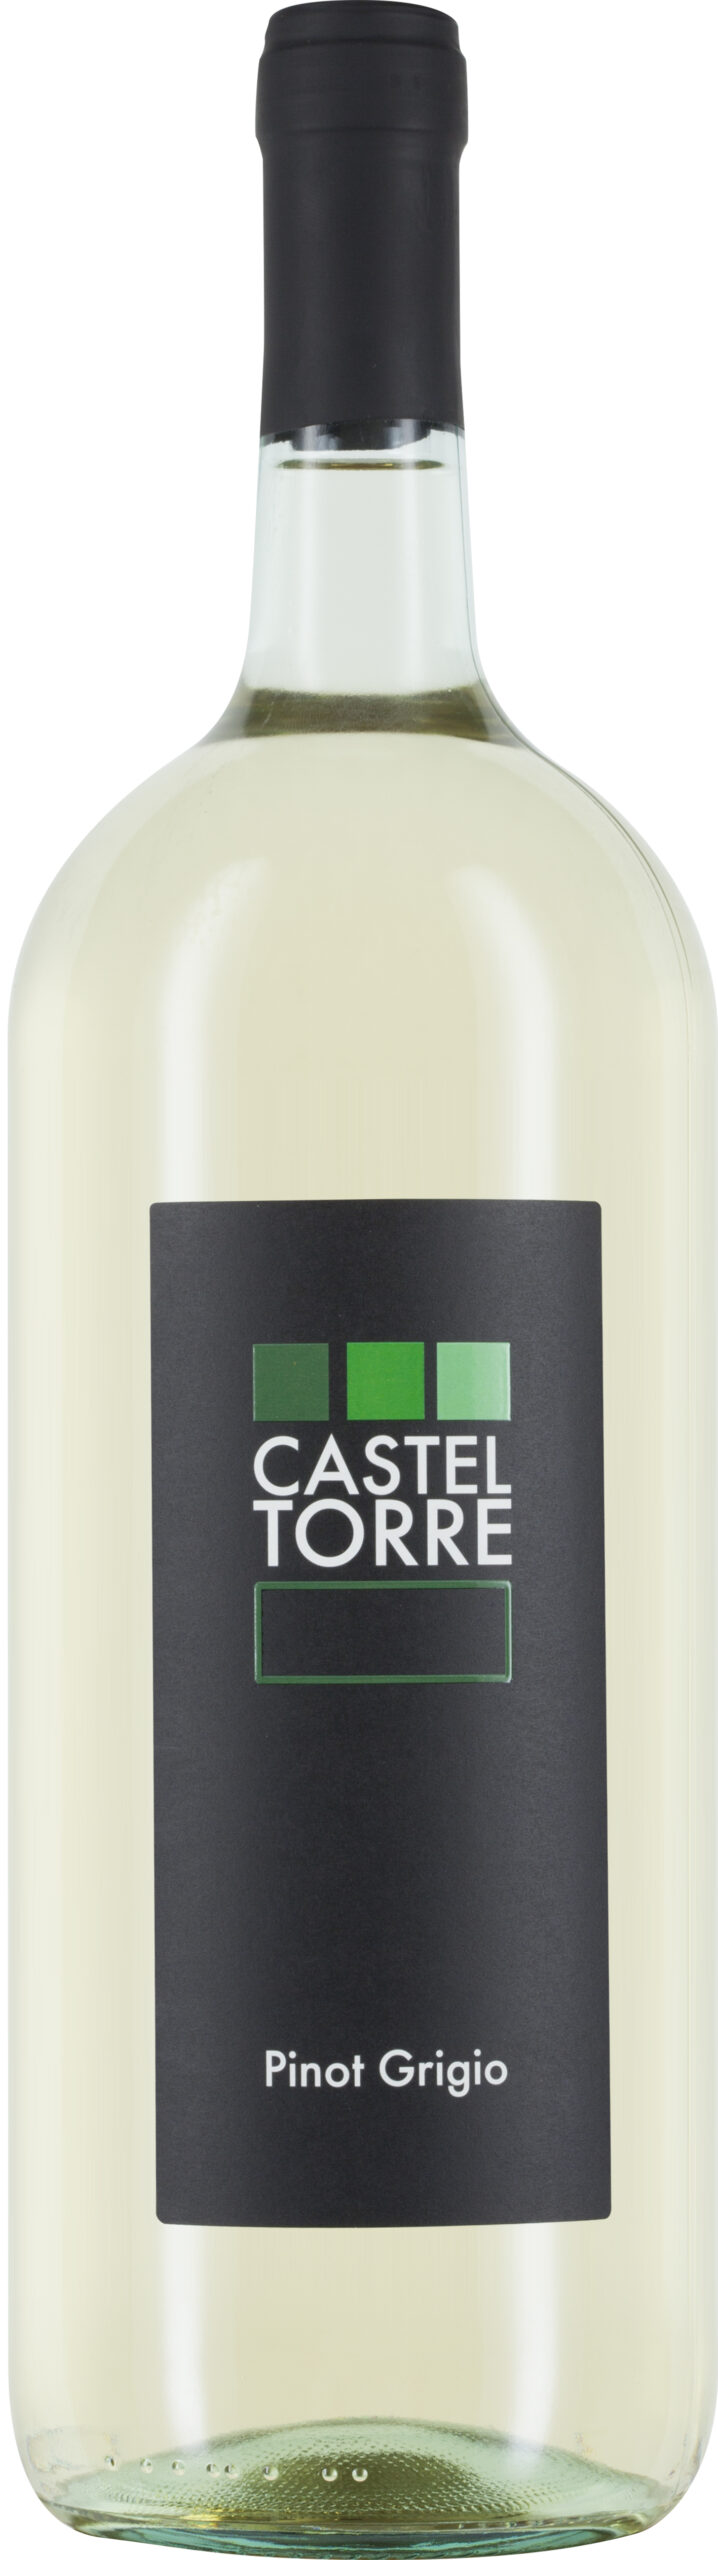 Casteltorre, Pinot Grigio delle Venezie DOC - Schenk Weine